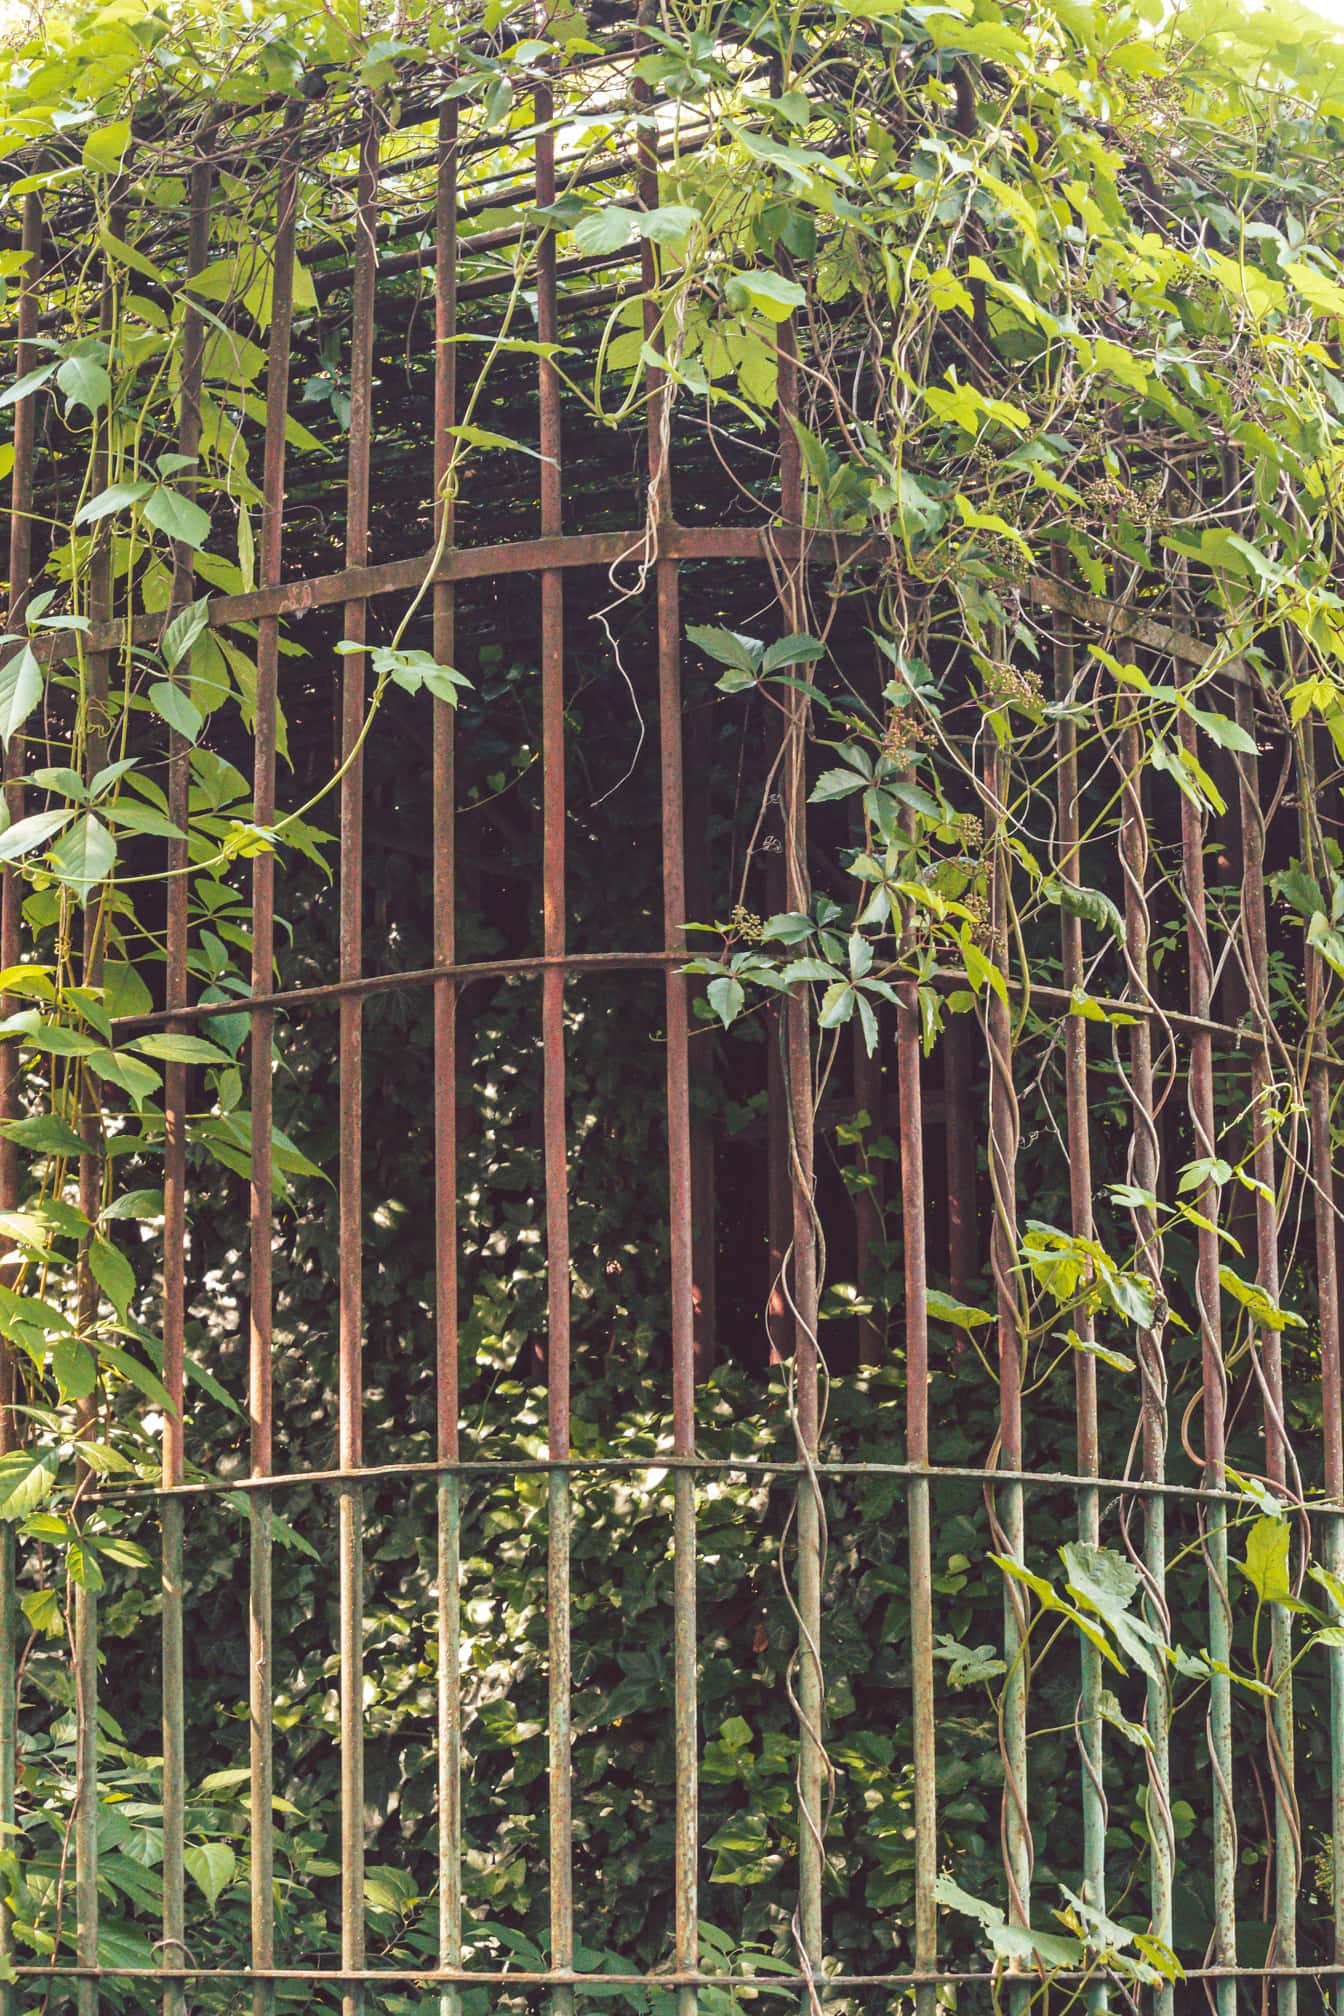 Gaiola de ferro fundido abandonada velha coberta de galhos de ervas daninhas